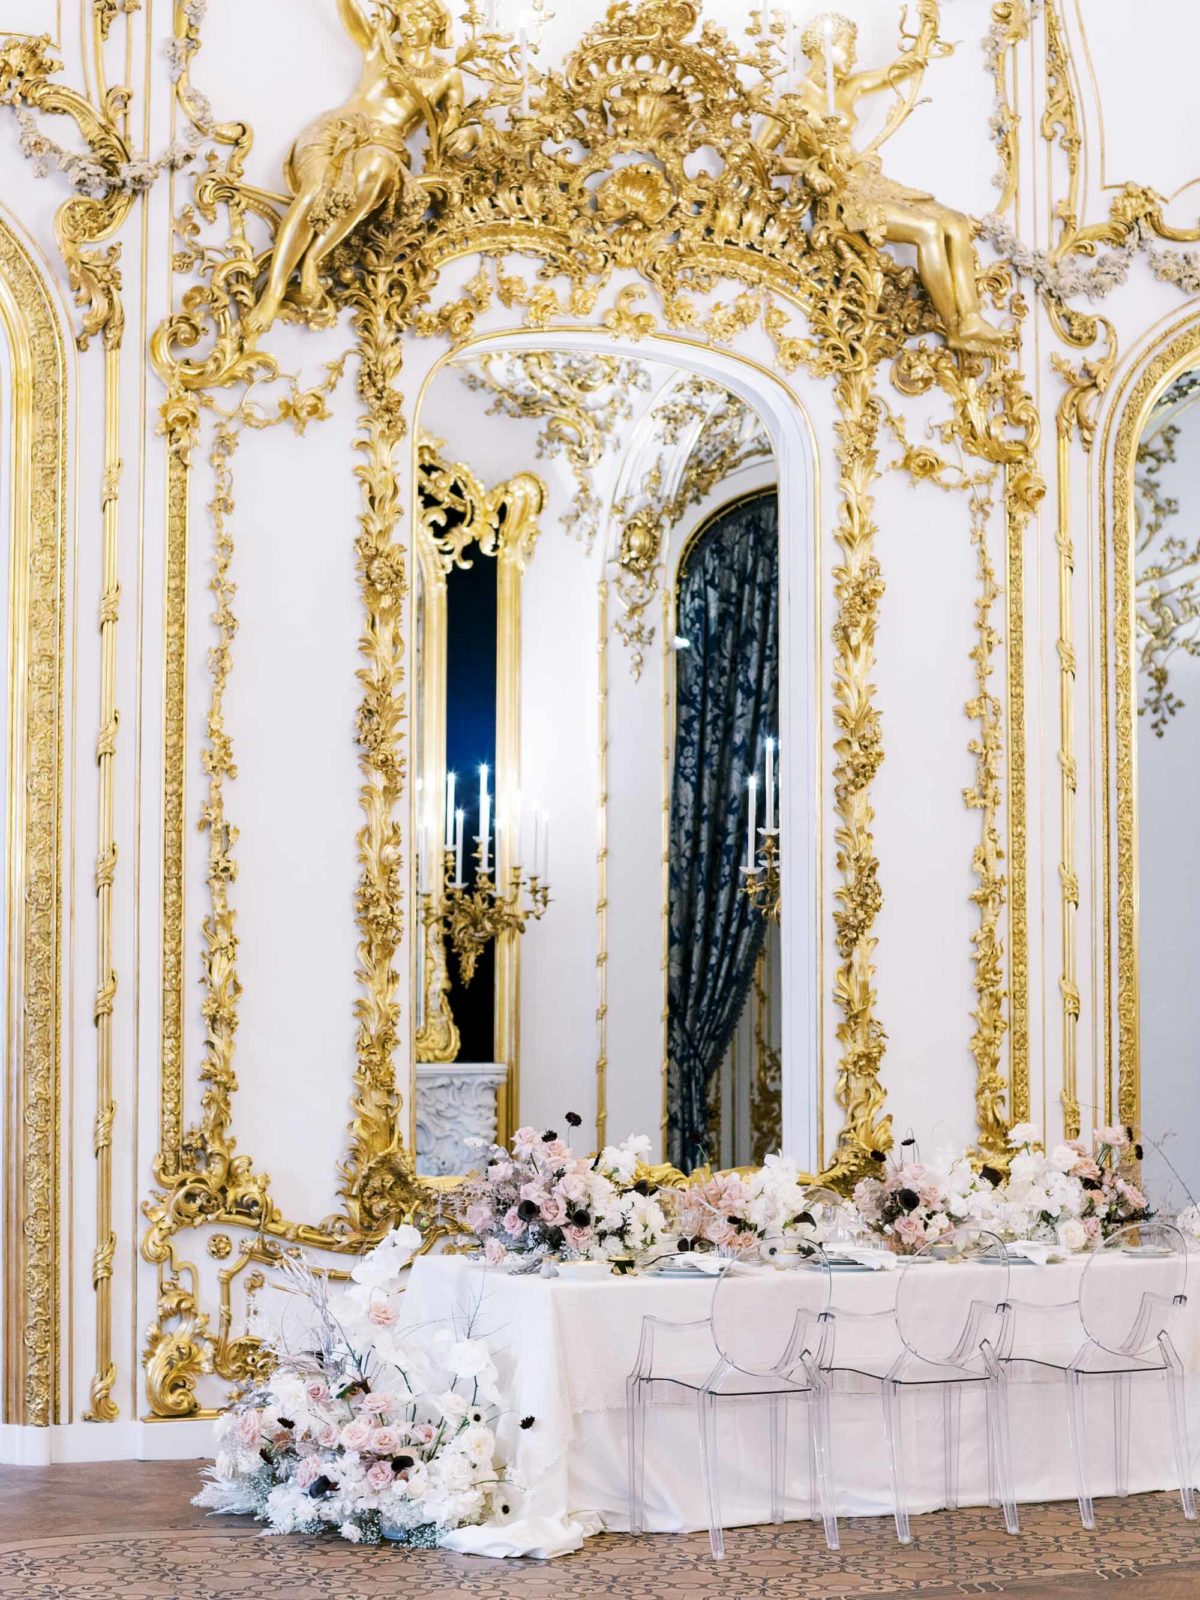 Palais Liechtenstein Wedding Photographer | Austria Luxury Wedding | Vienna Film Photos | Destination Wedding | Molly Carr Photography